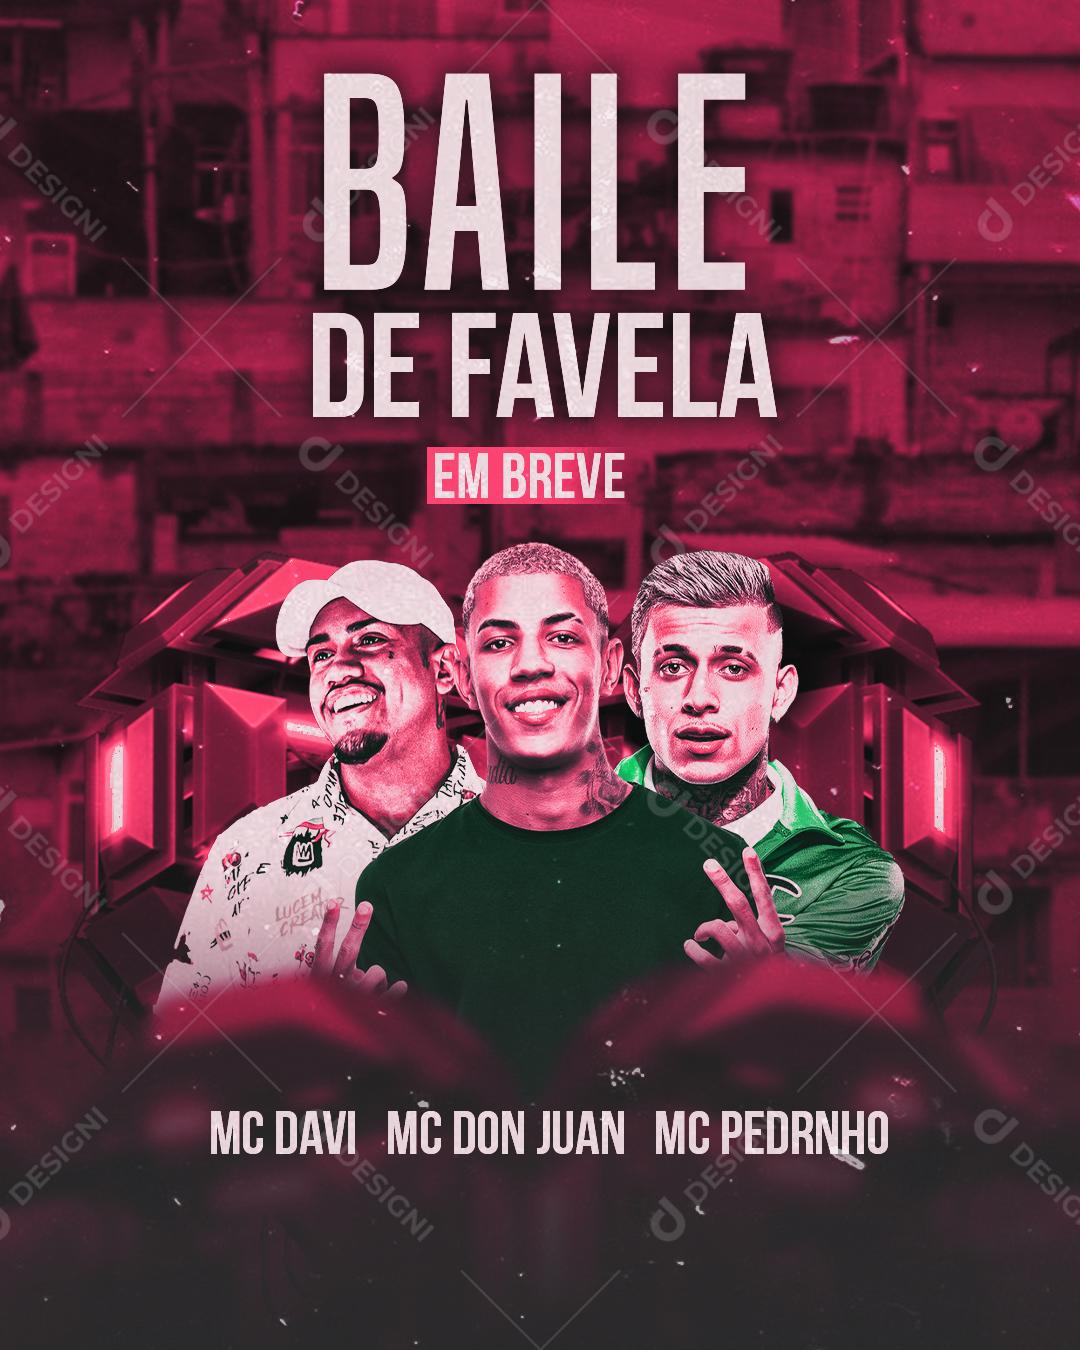 Meep Tickets - Baile de favela